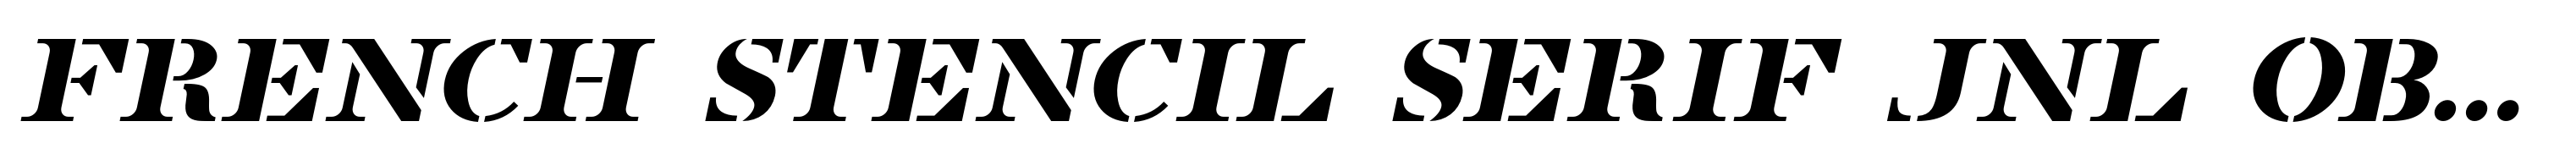 French Stencil Serif JNL Obllique